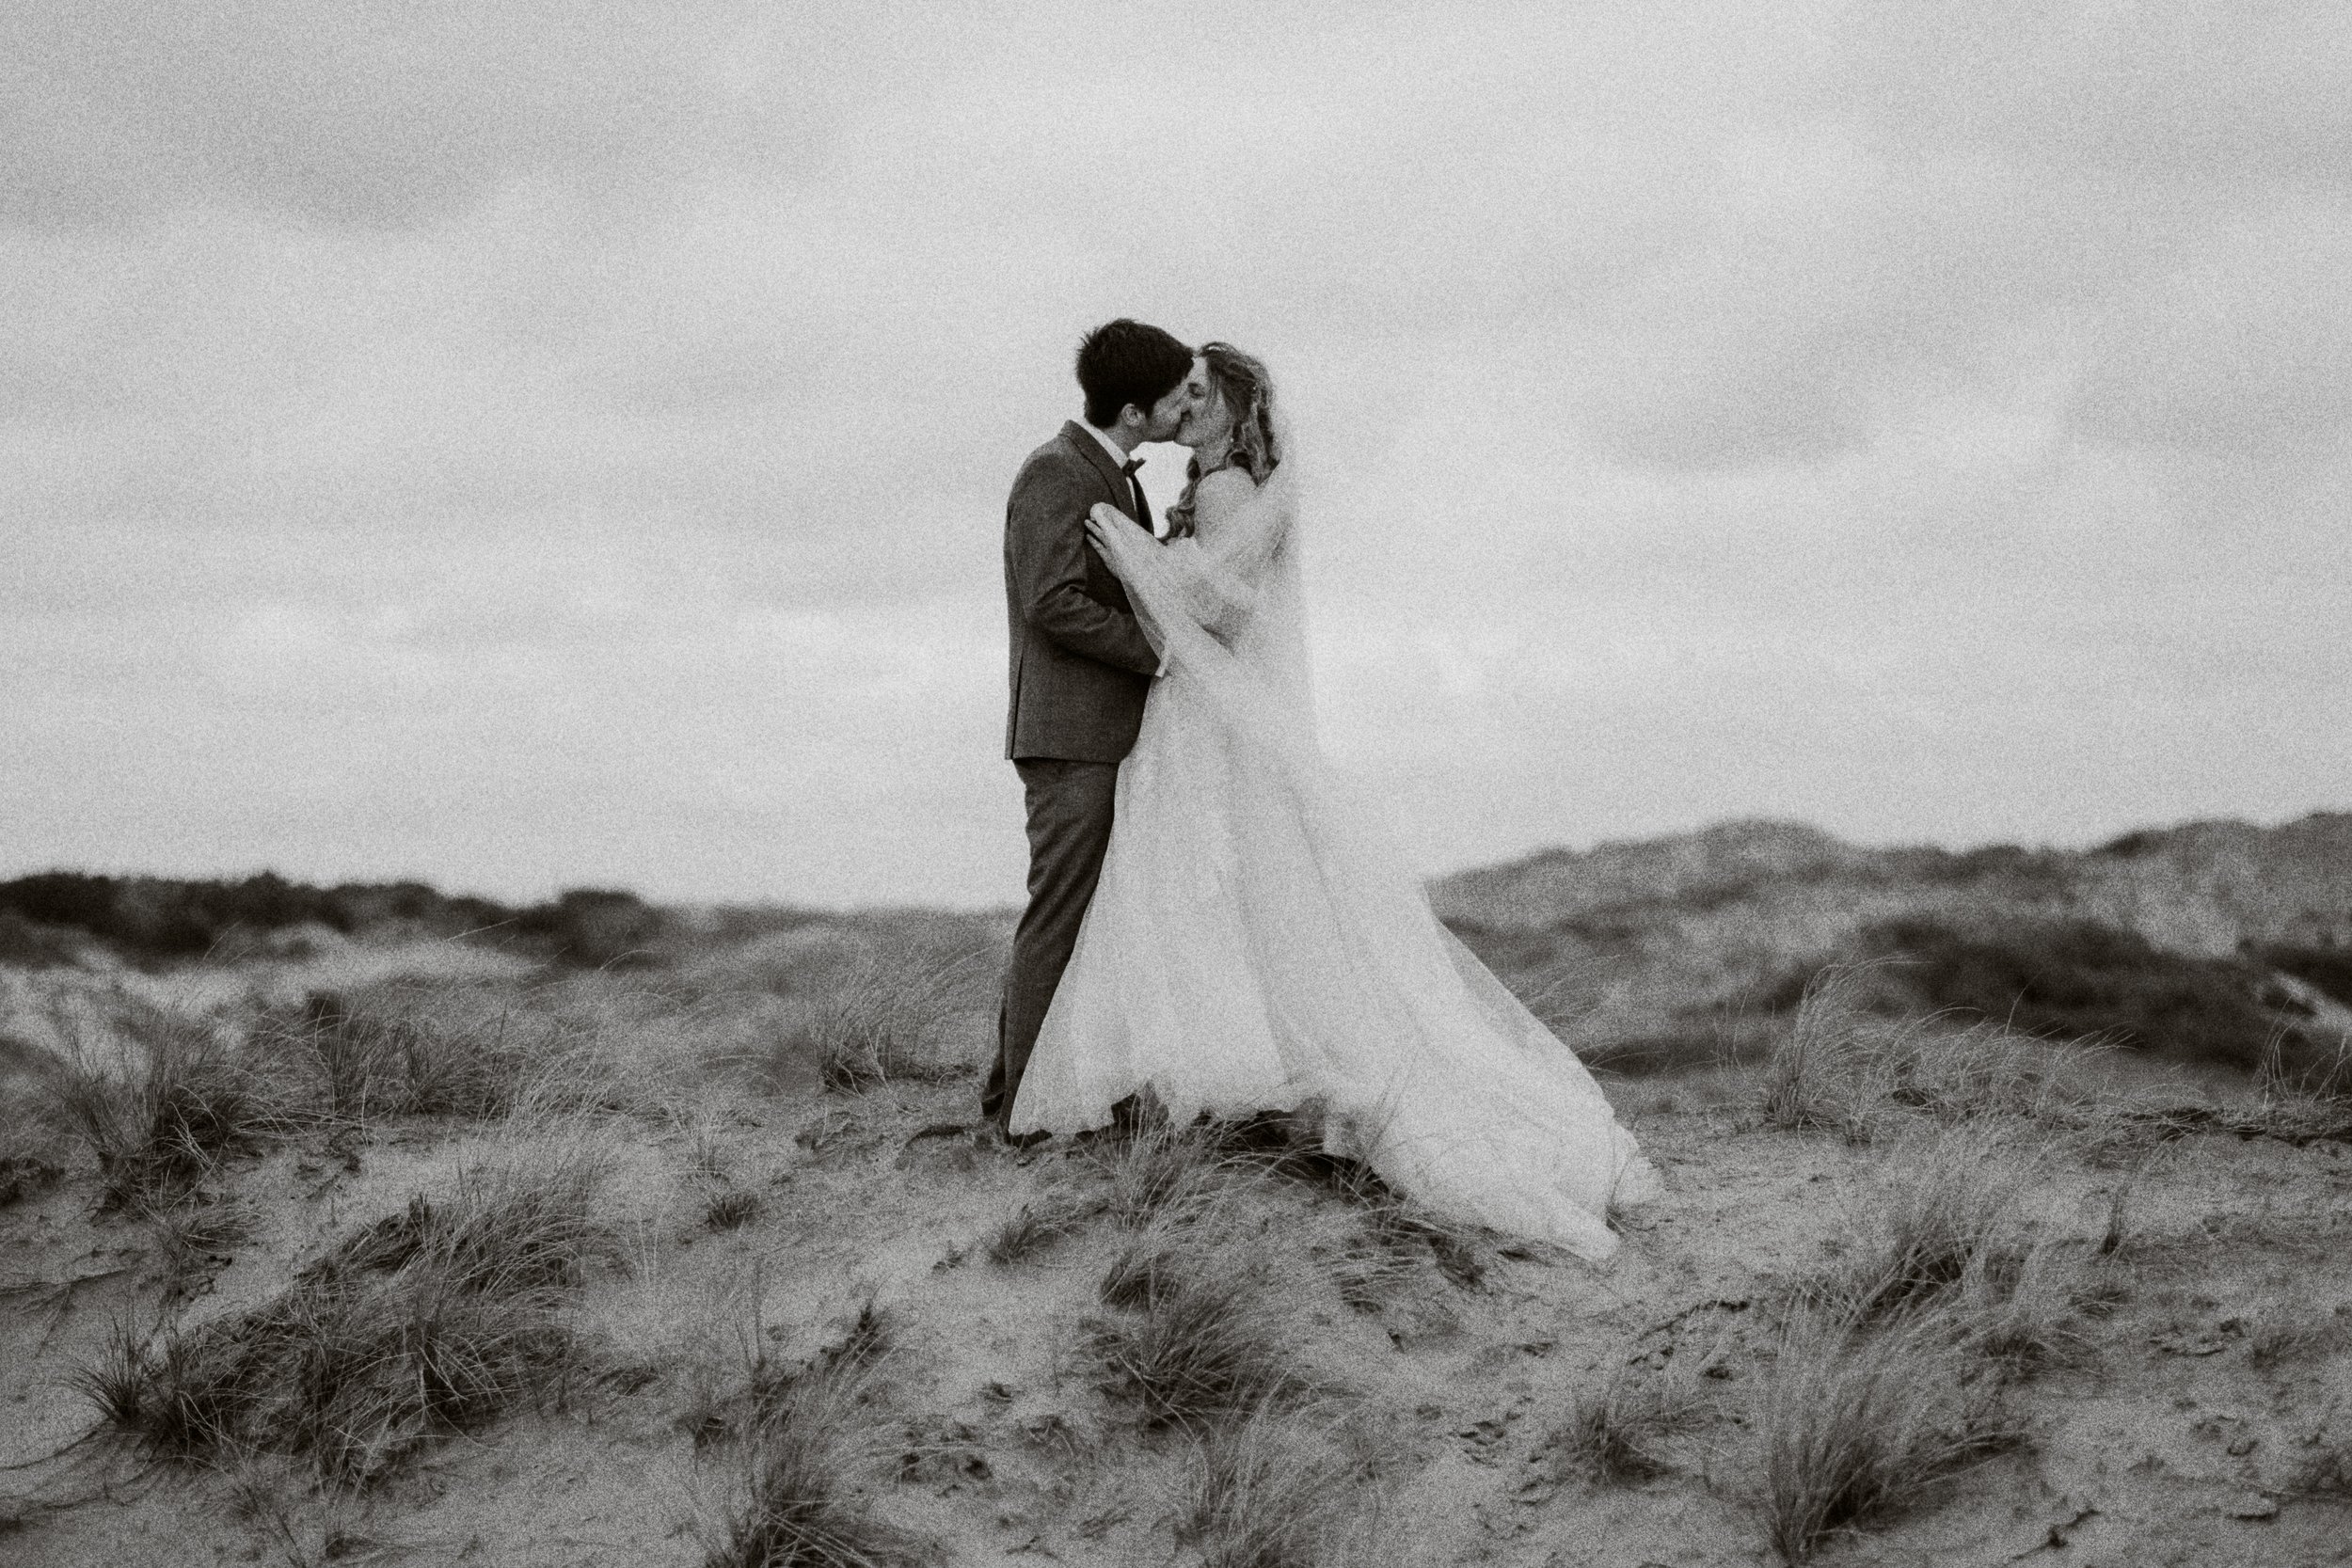 laura&konnie wedding hochzeitsfotograf holland strand fujifilm--2.jpg